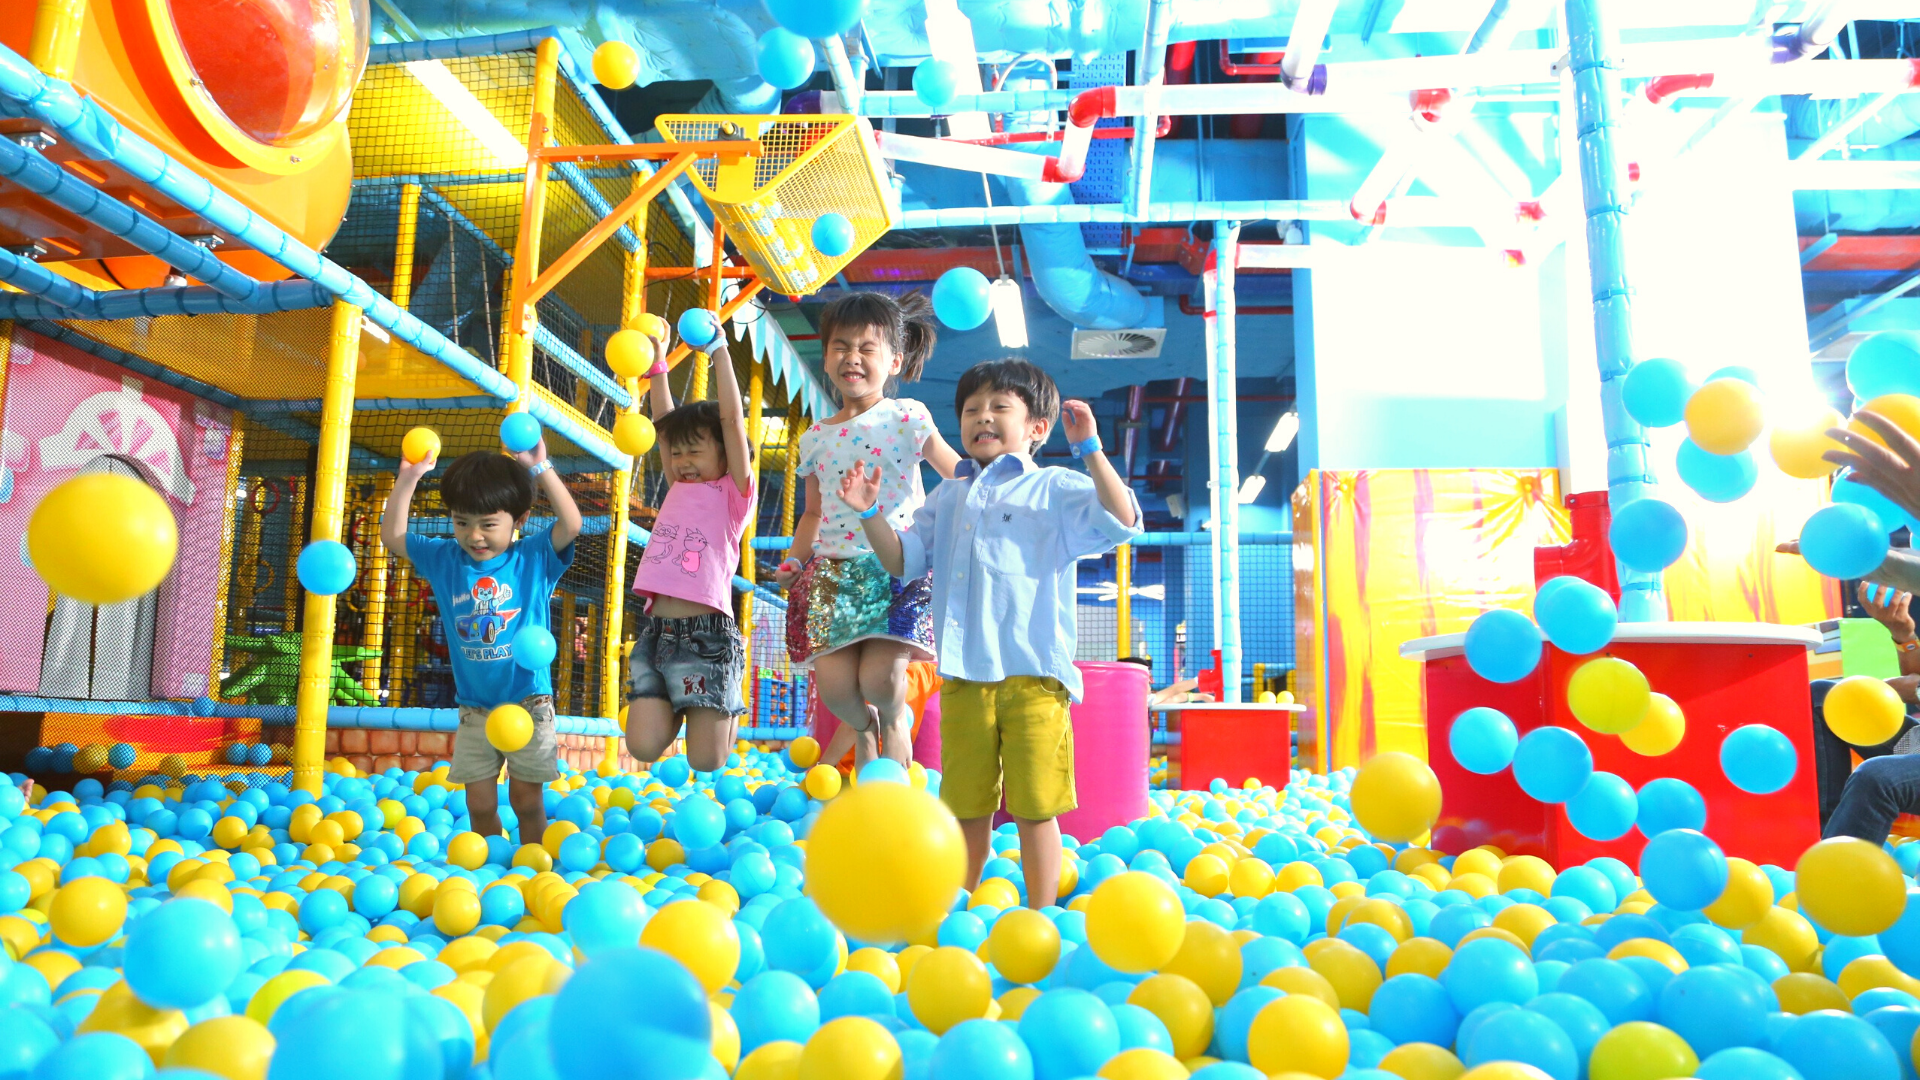  khu vui chơi cho trẻ em ở Đà Nẵng